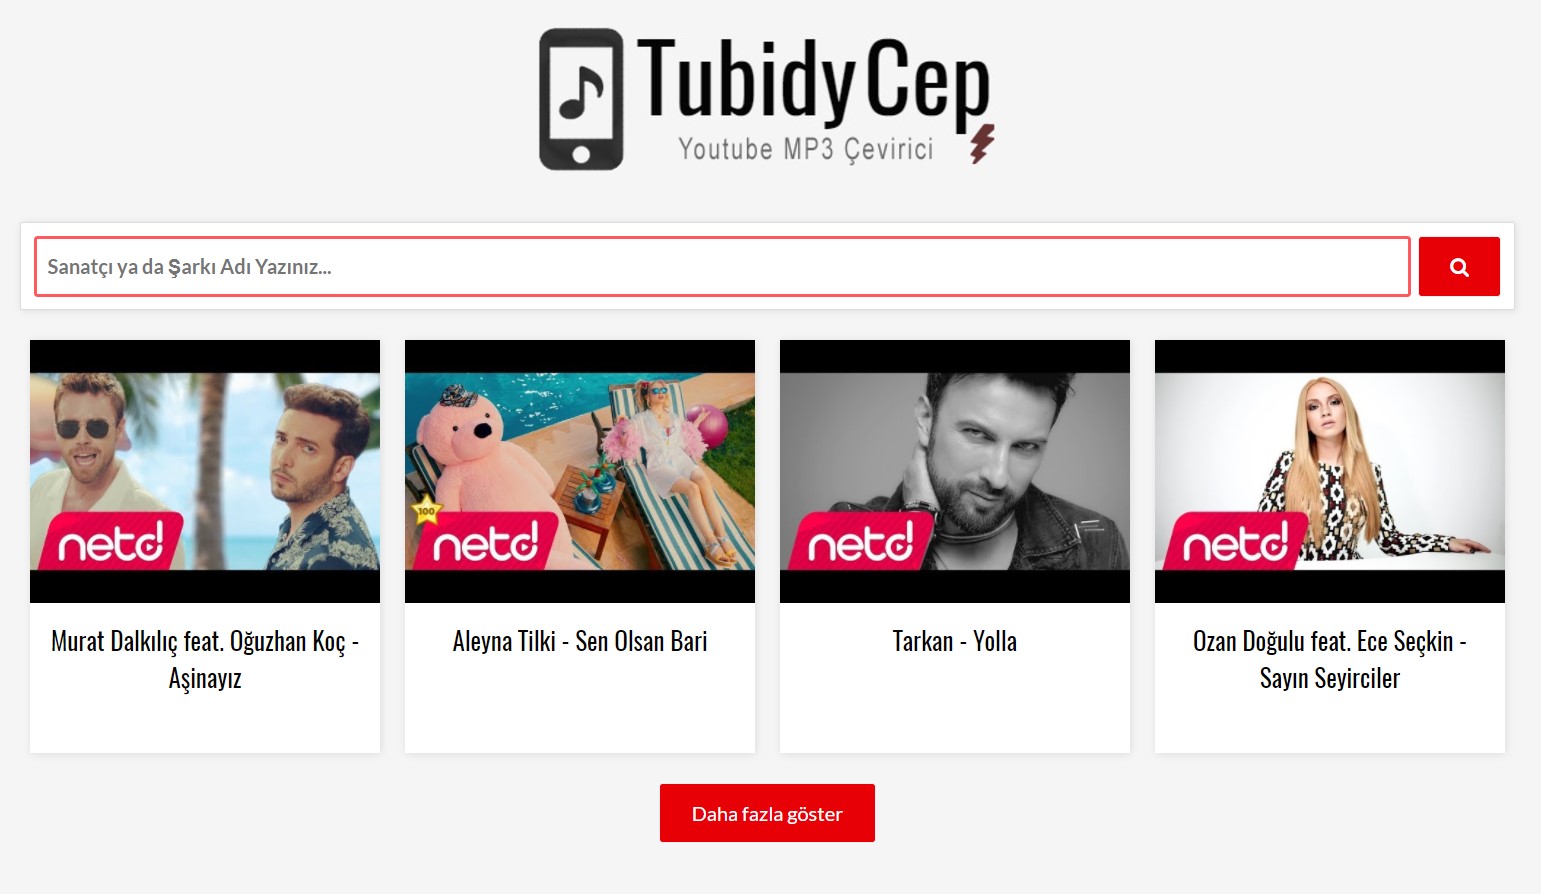 Youtube MP3 Dönüştürücü - Tubidy Cep